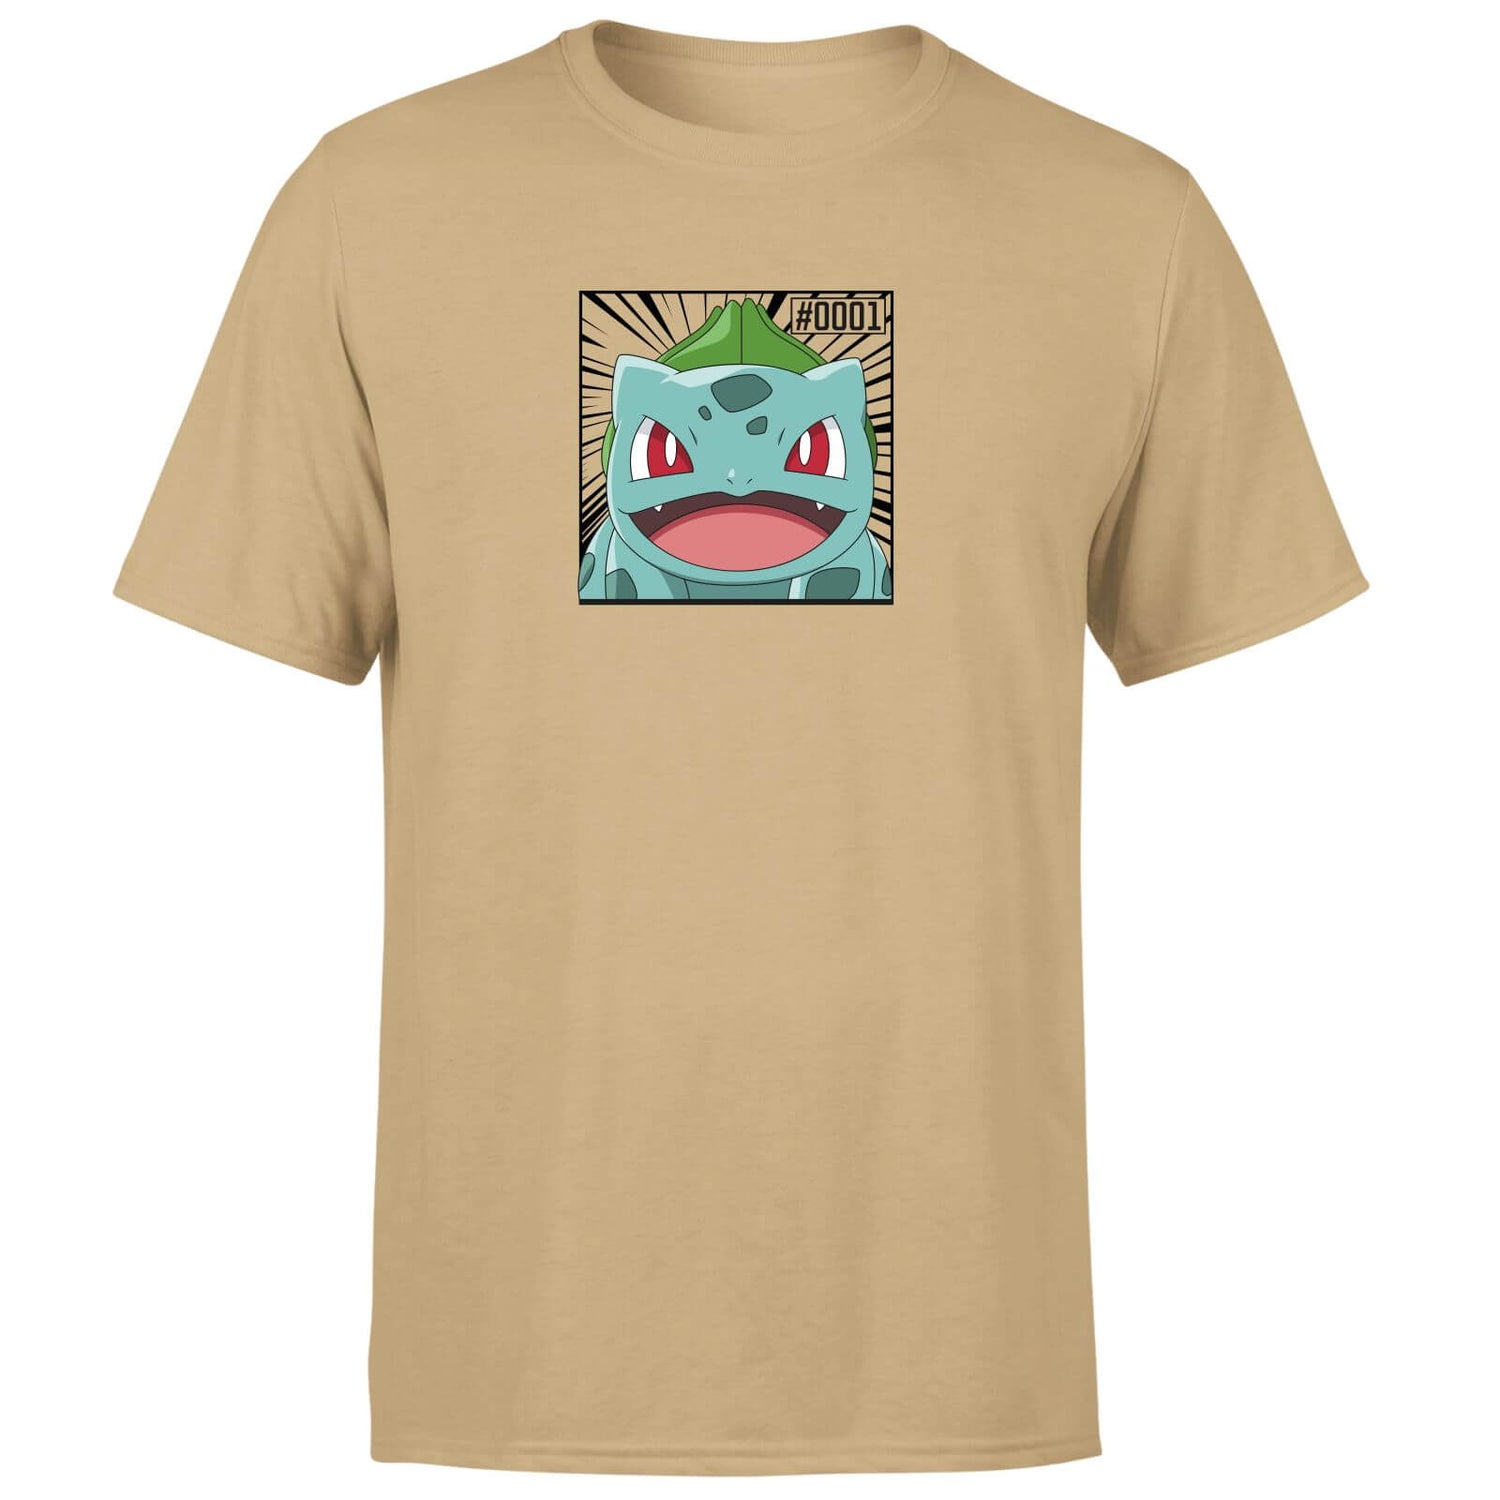 Pokémon Pokédex Bulbasaur #0001 Men's T-Shirt - Tan